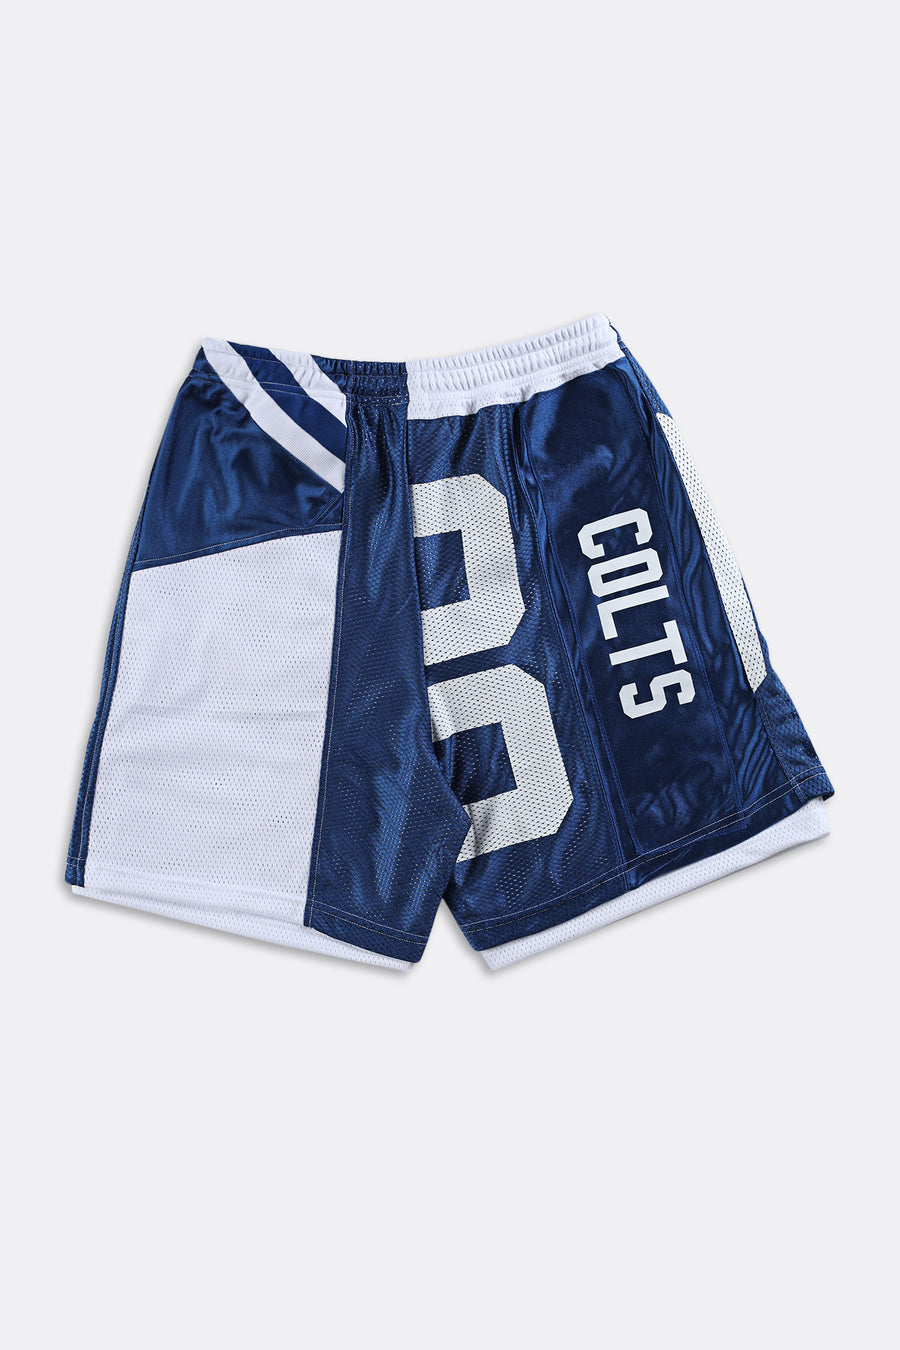 Rework Unisex Colts NFL Jersey Shorts - Women-L, Men-M